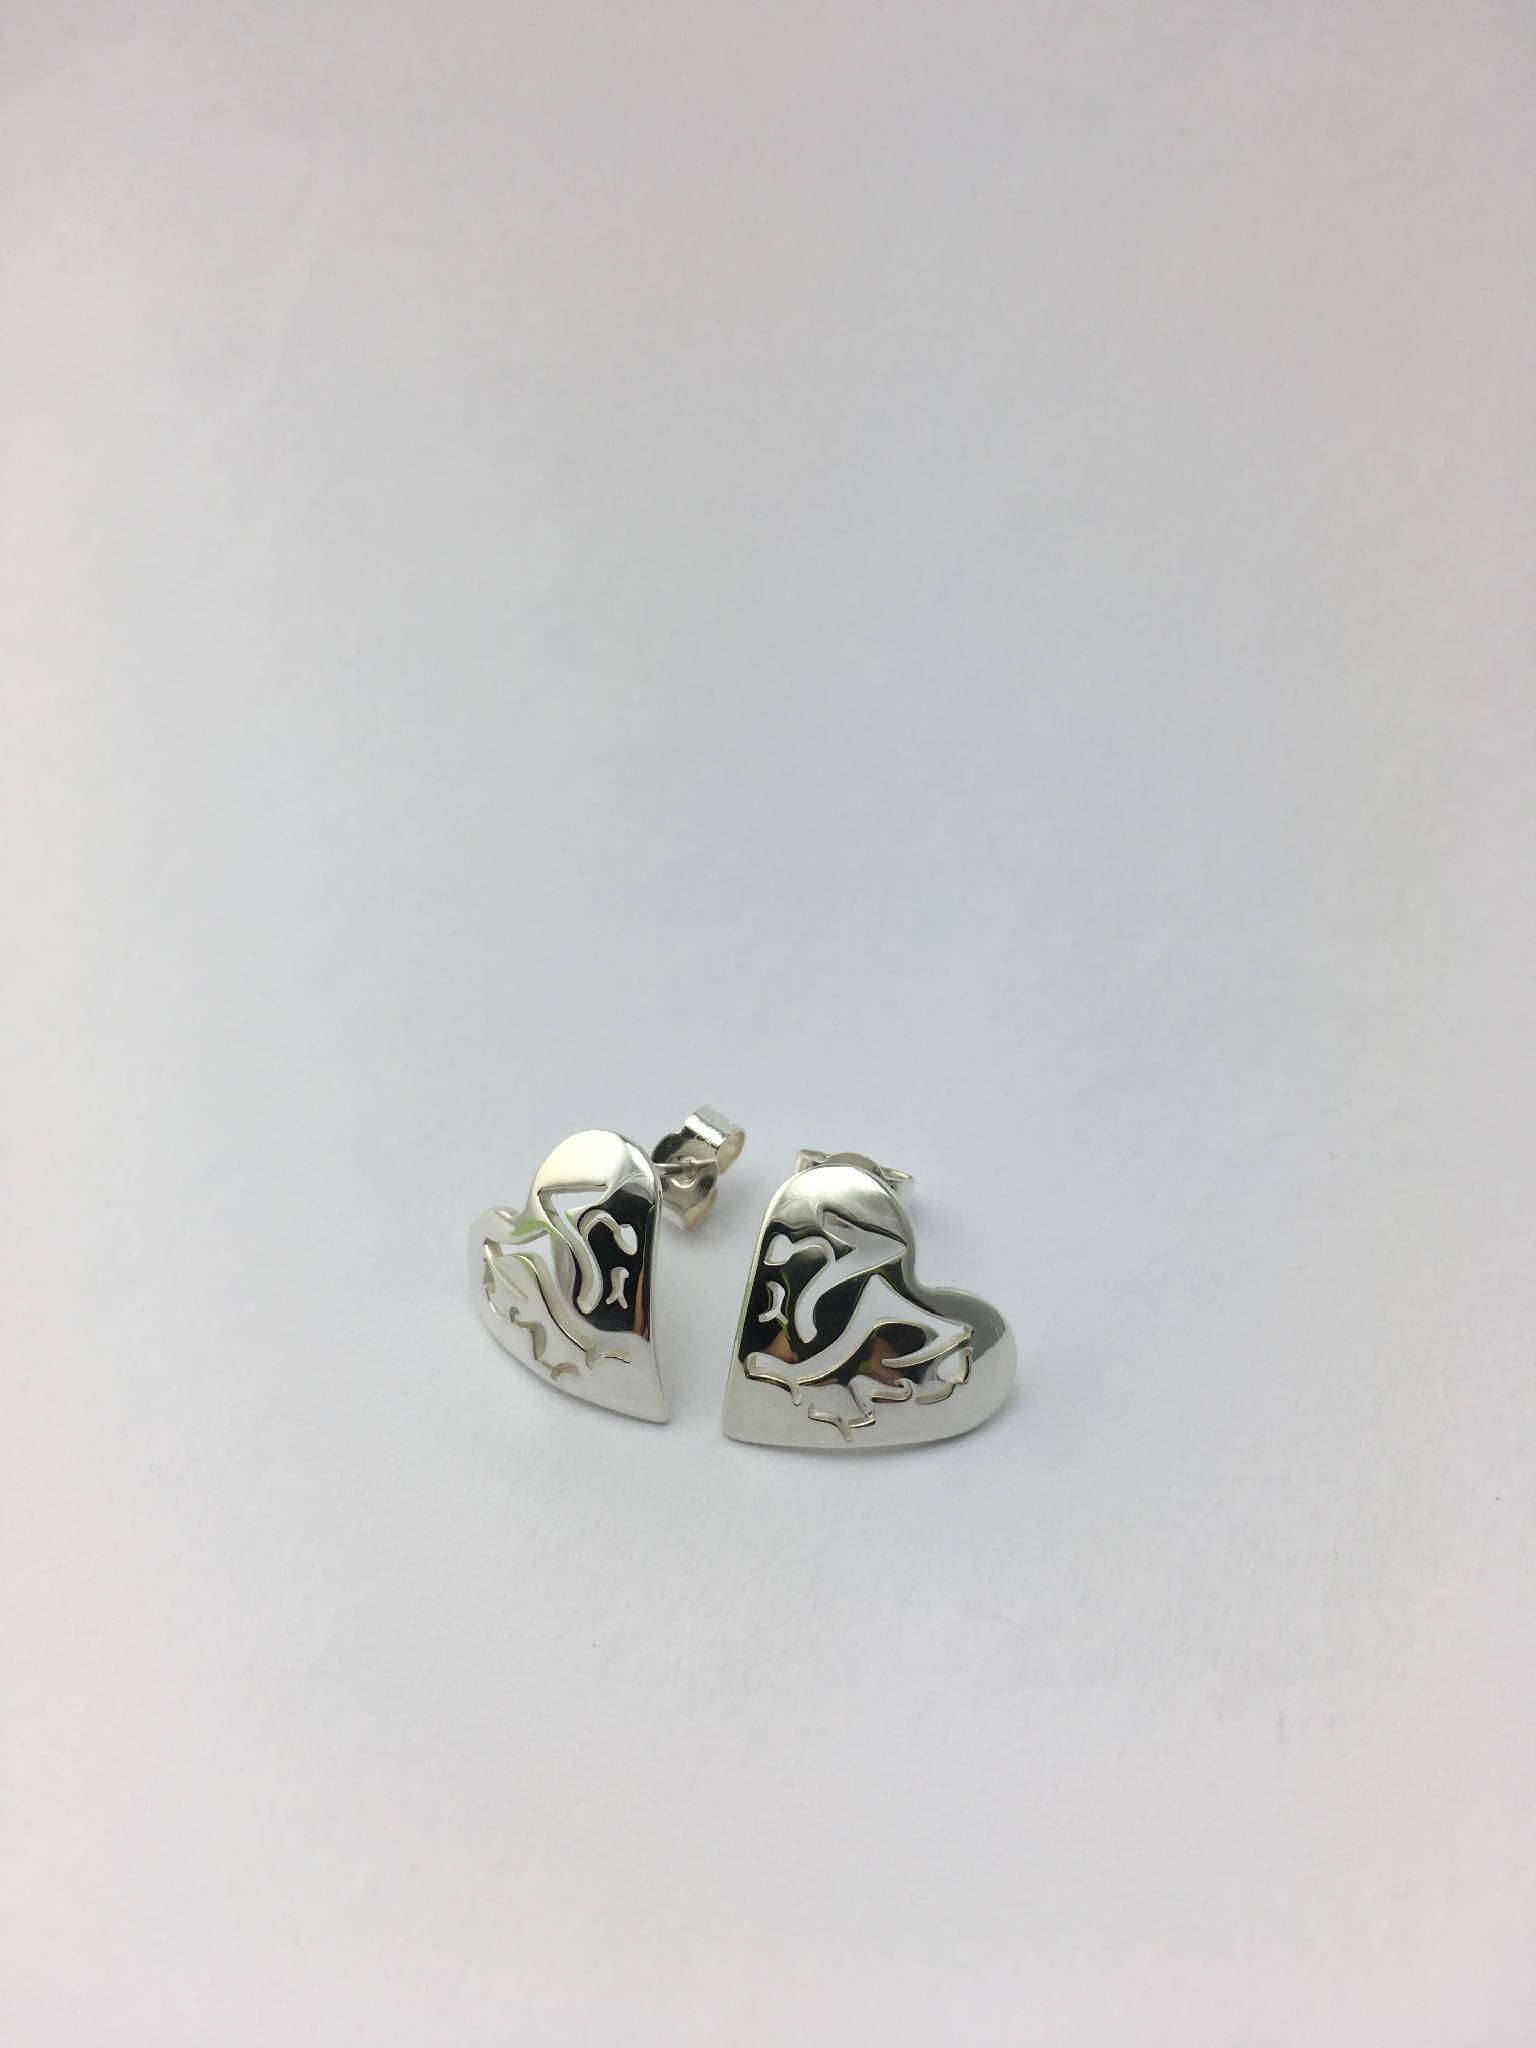 Welsh Dragon heart shaped stud earrings